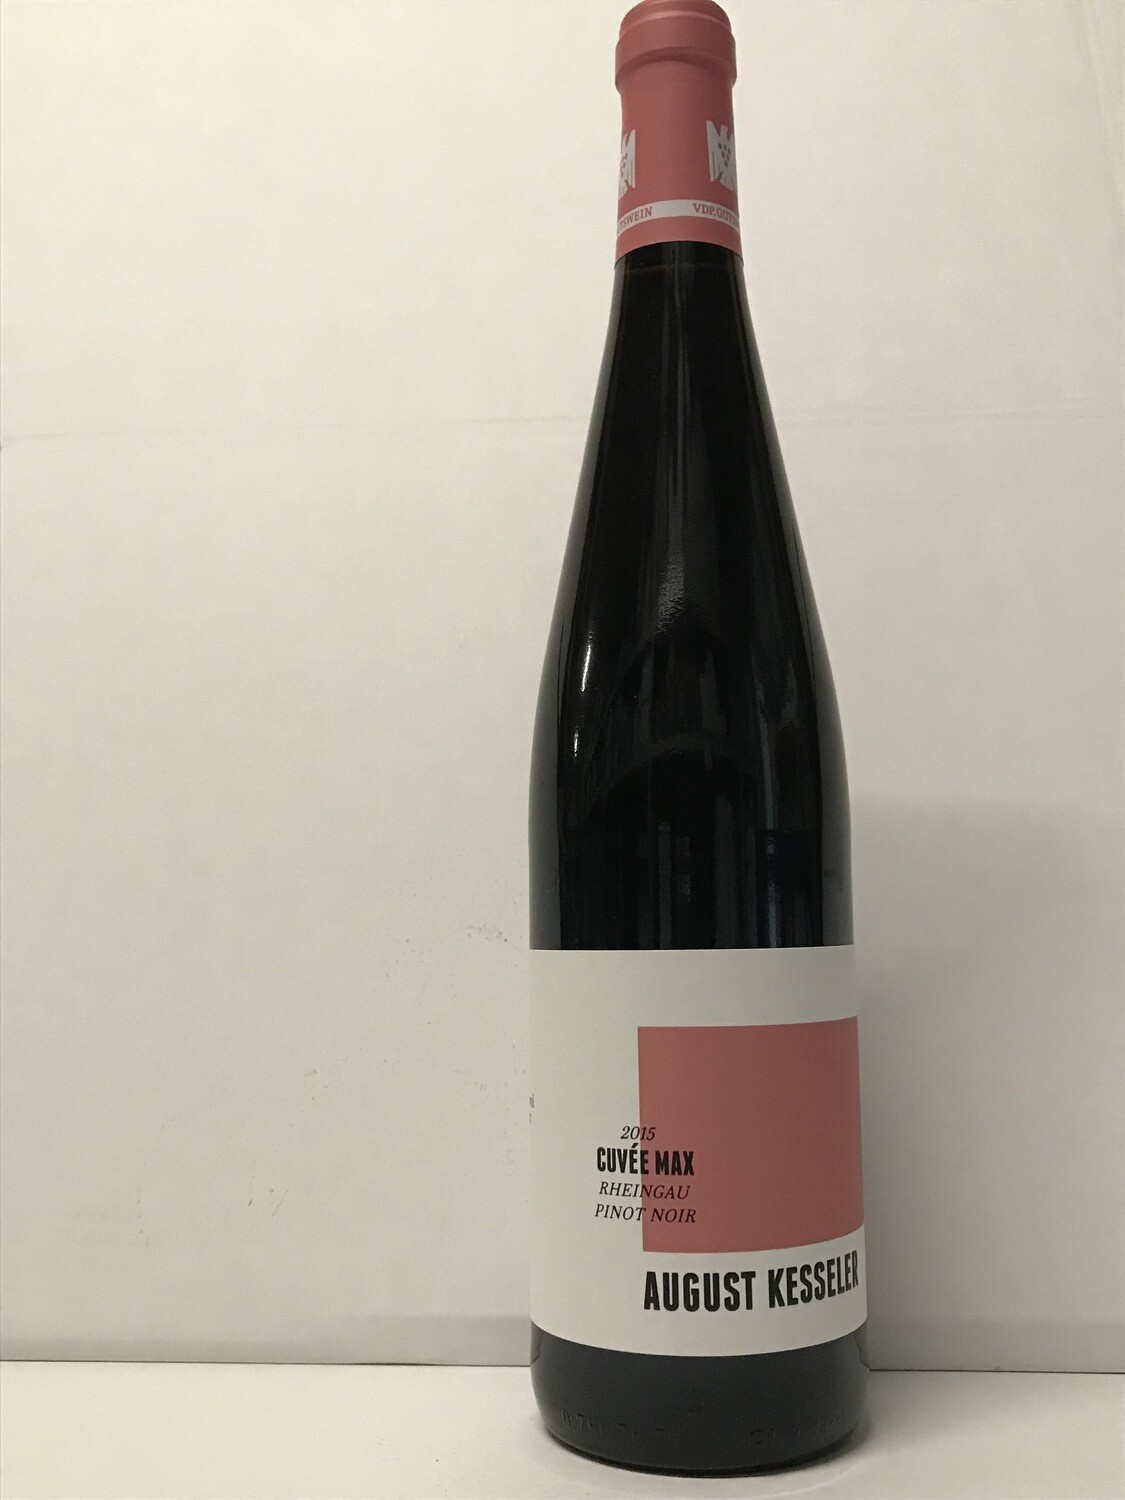 Pinot noir 2015 droog Cuvée Max August Kesseler (Rheingau)